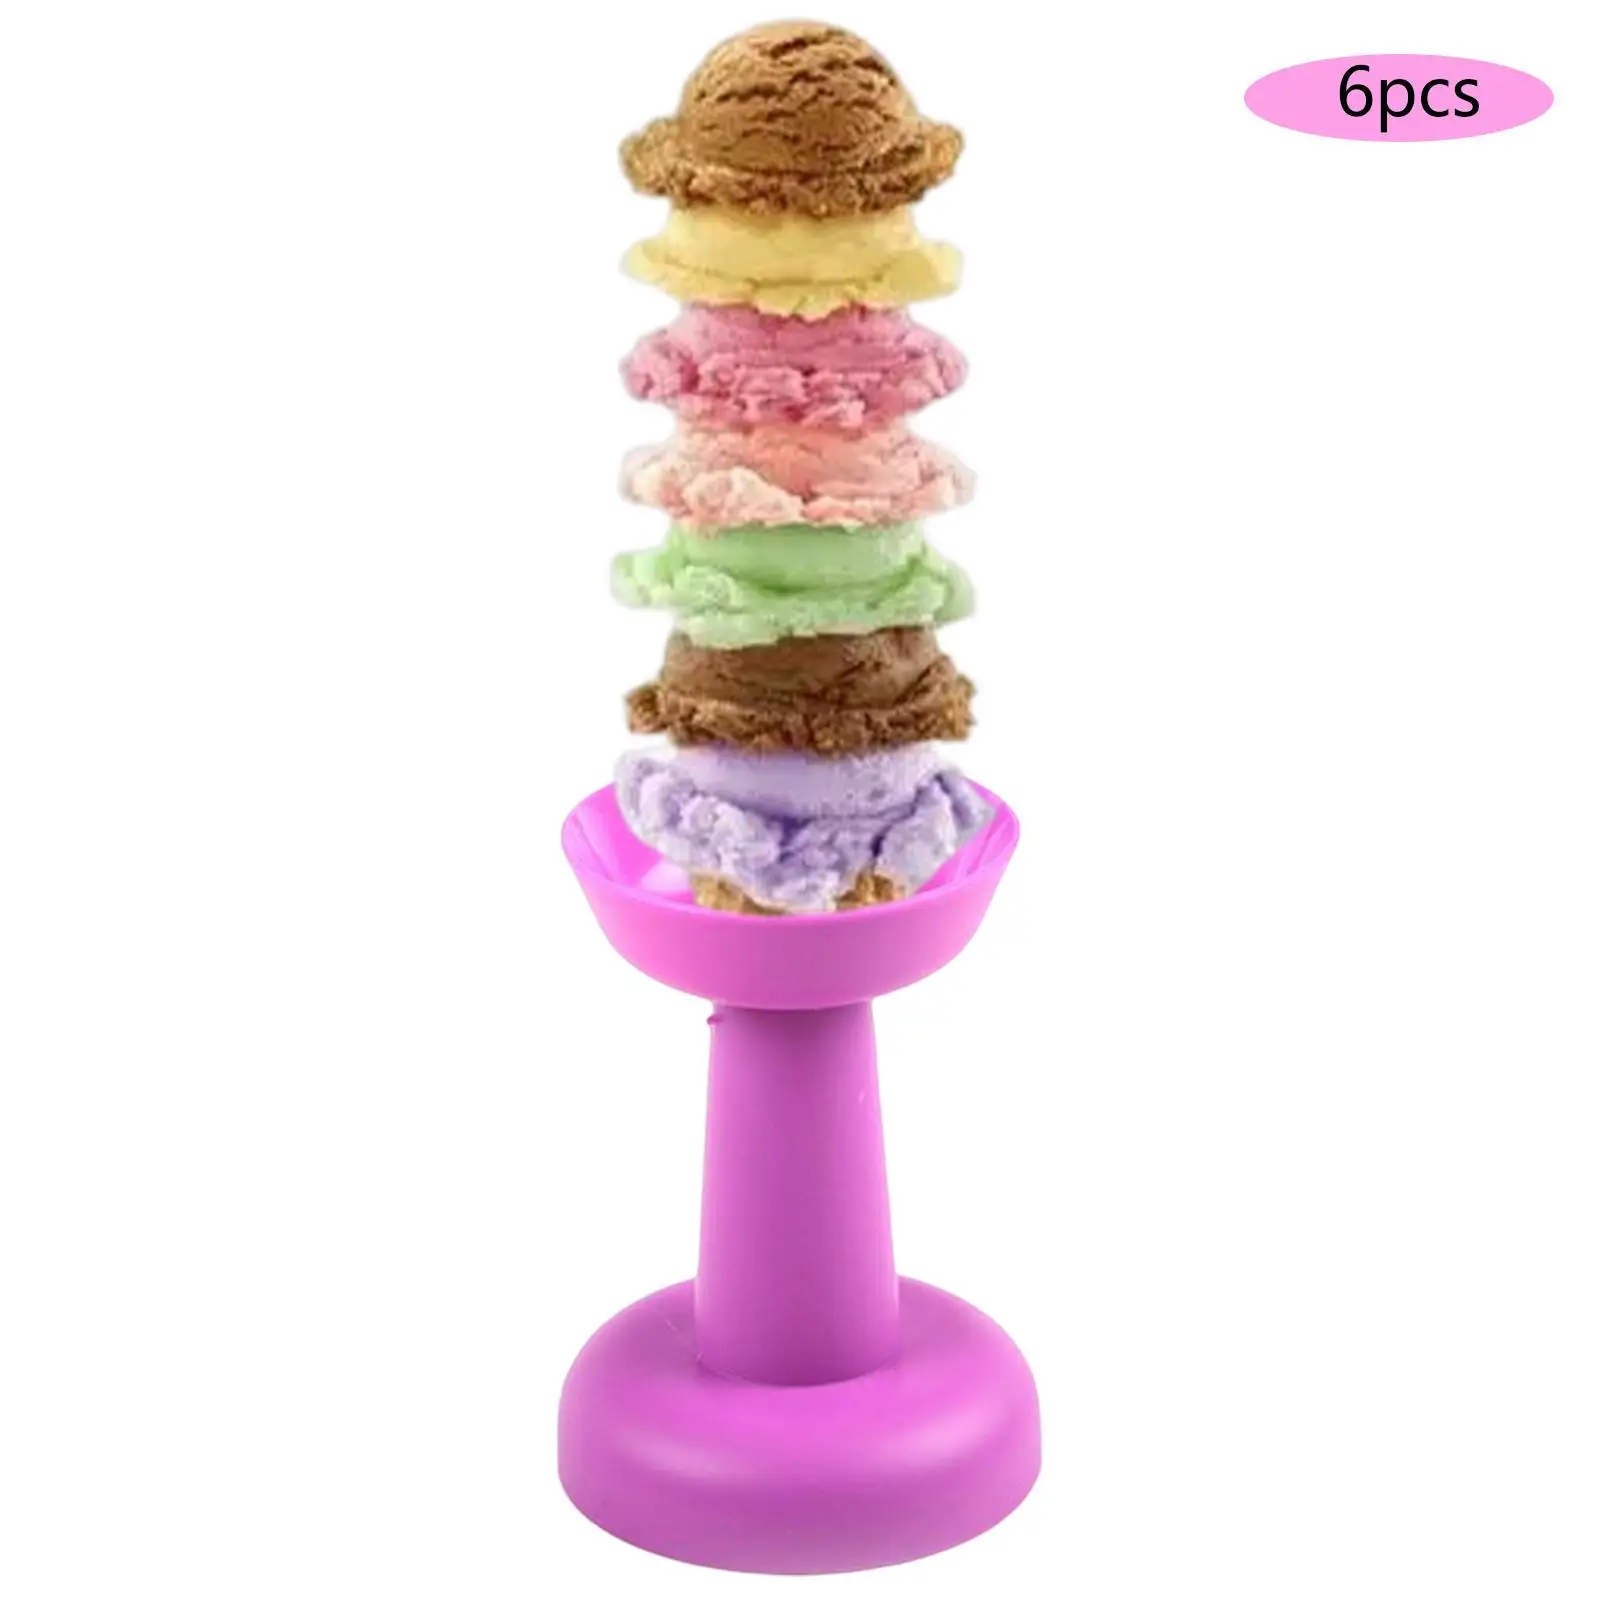 6Pcs Multipurpose Cream Holder Decorative Practical Round Reusable Dessert Cup